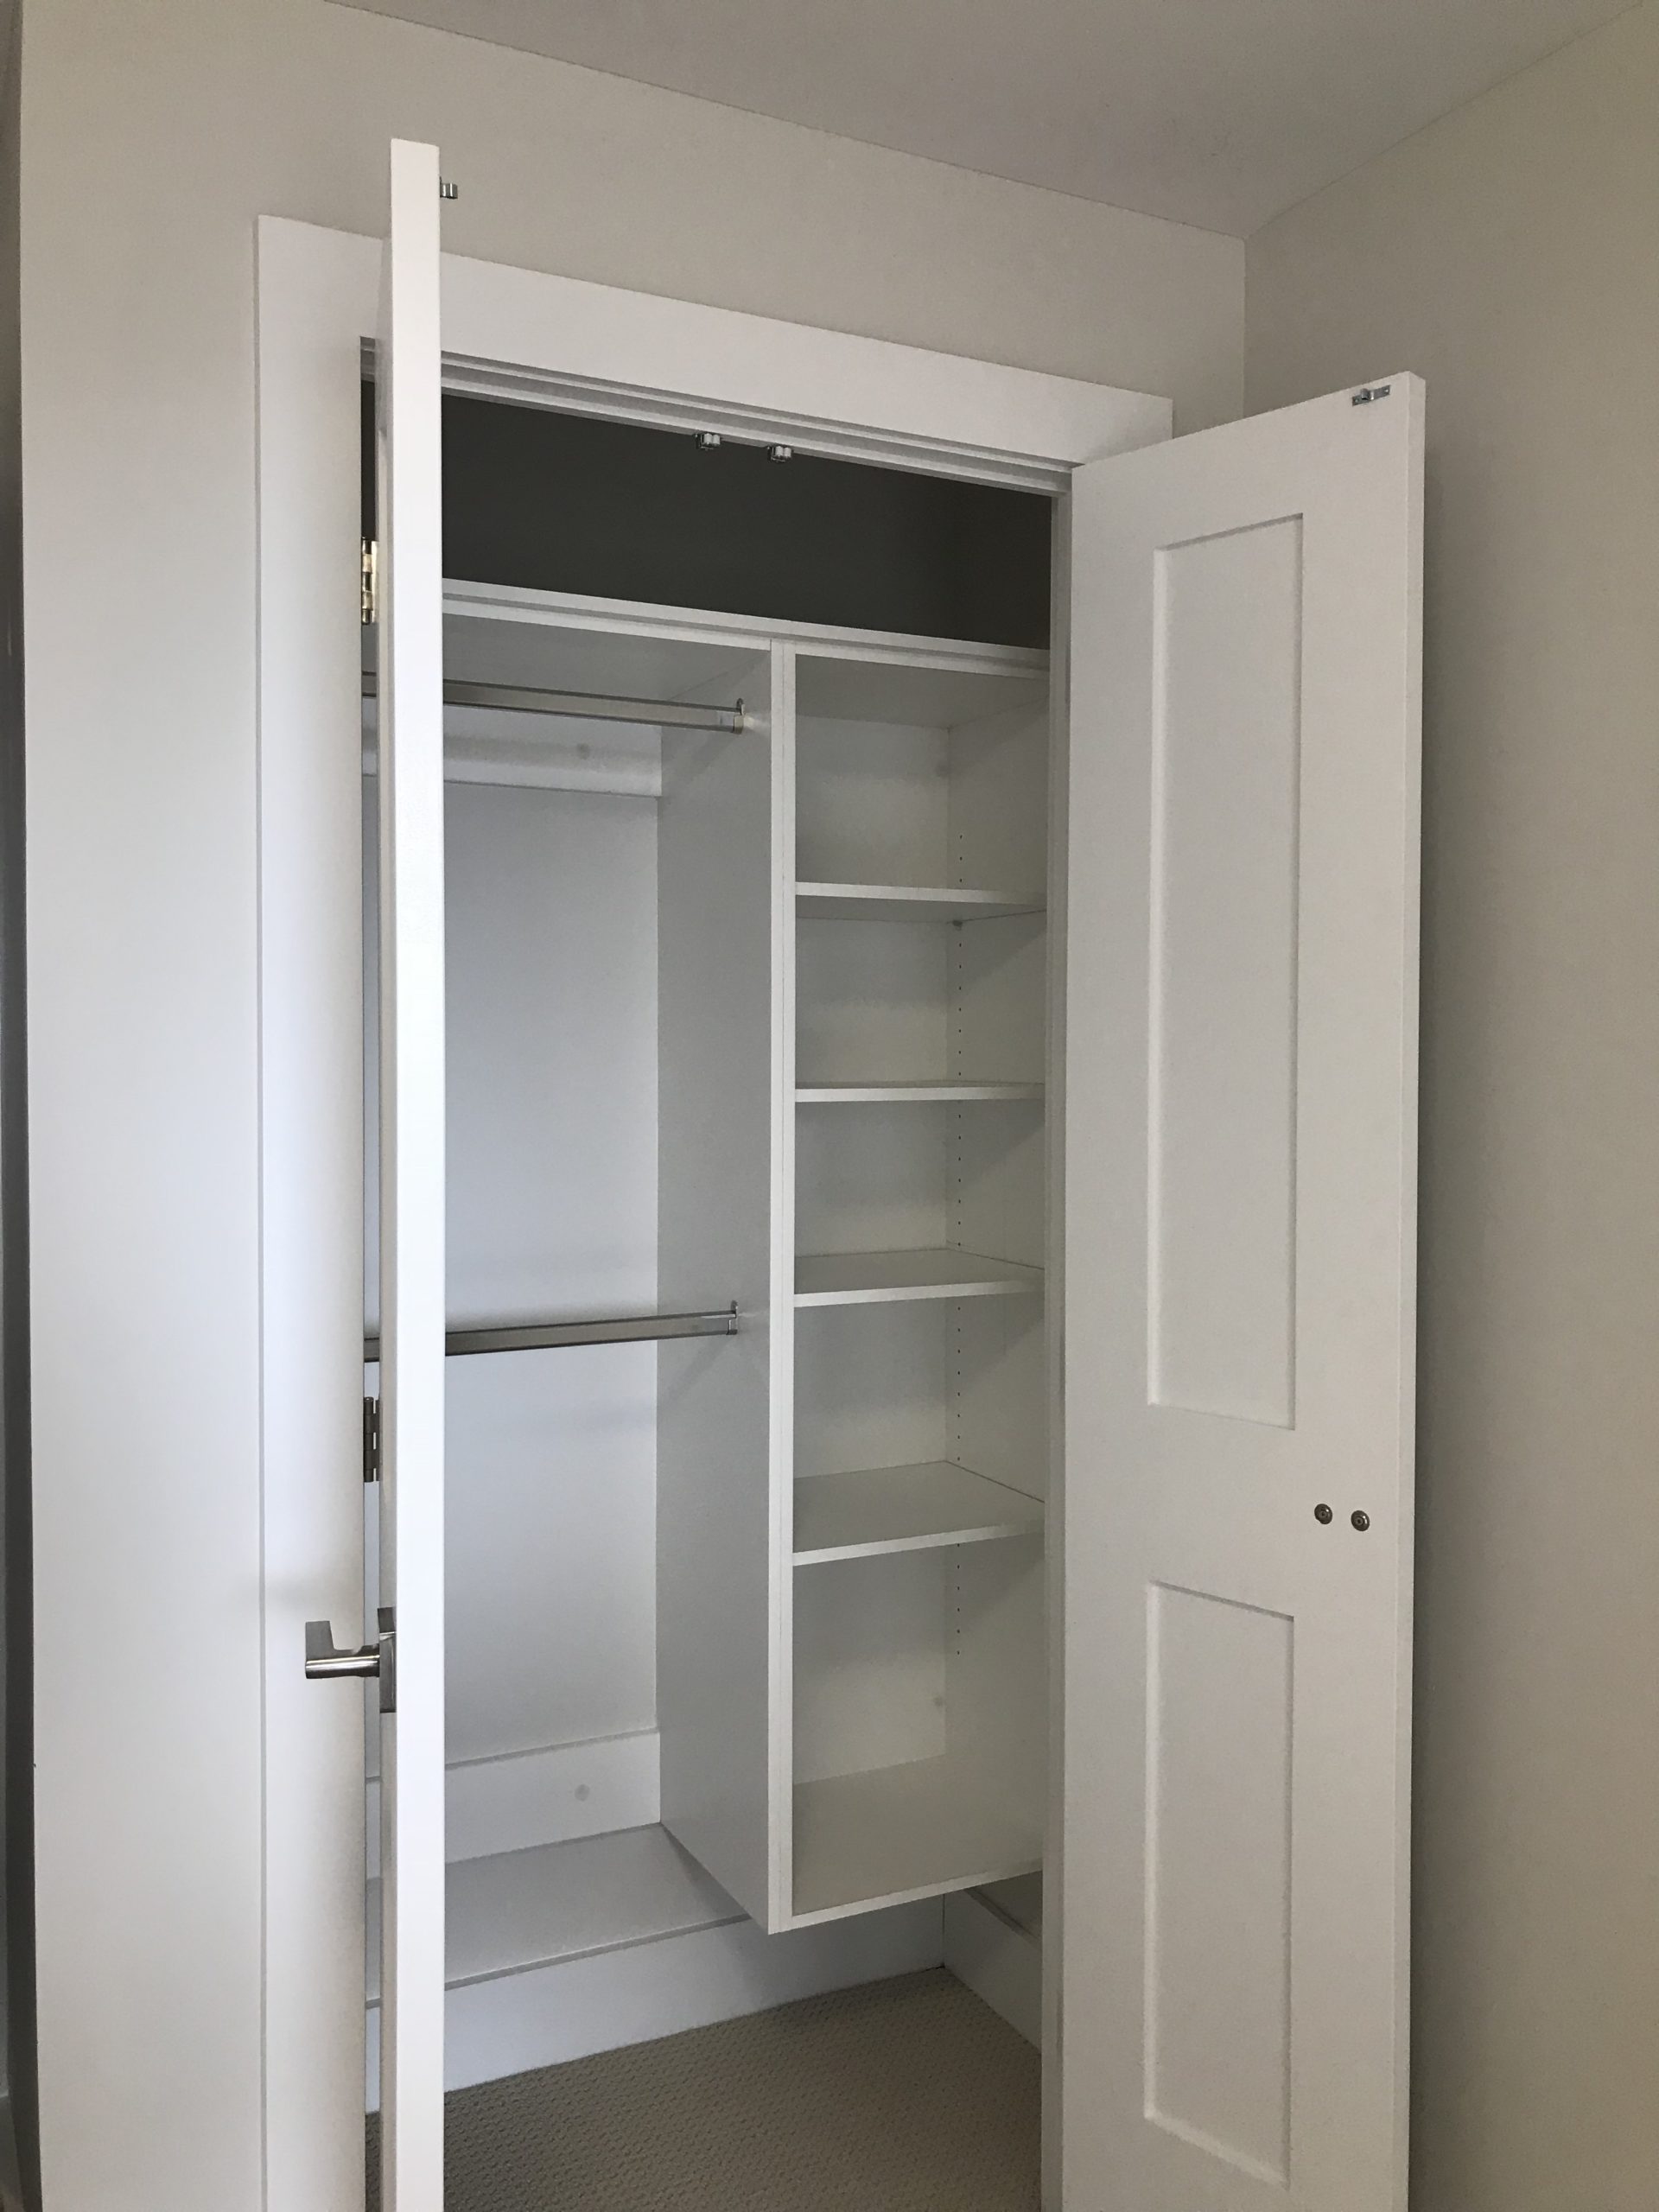 Custom Built Closet with Open Door Storage Cabinet and Duo Level Coat Rack